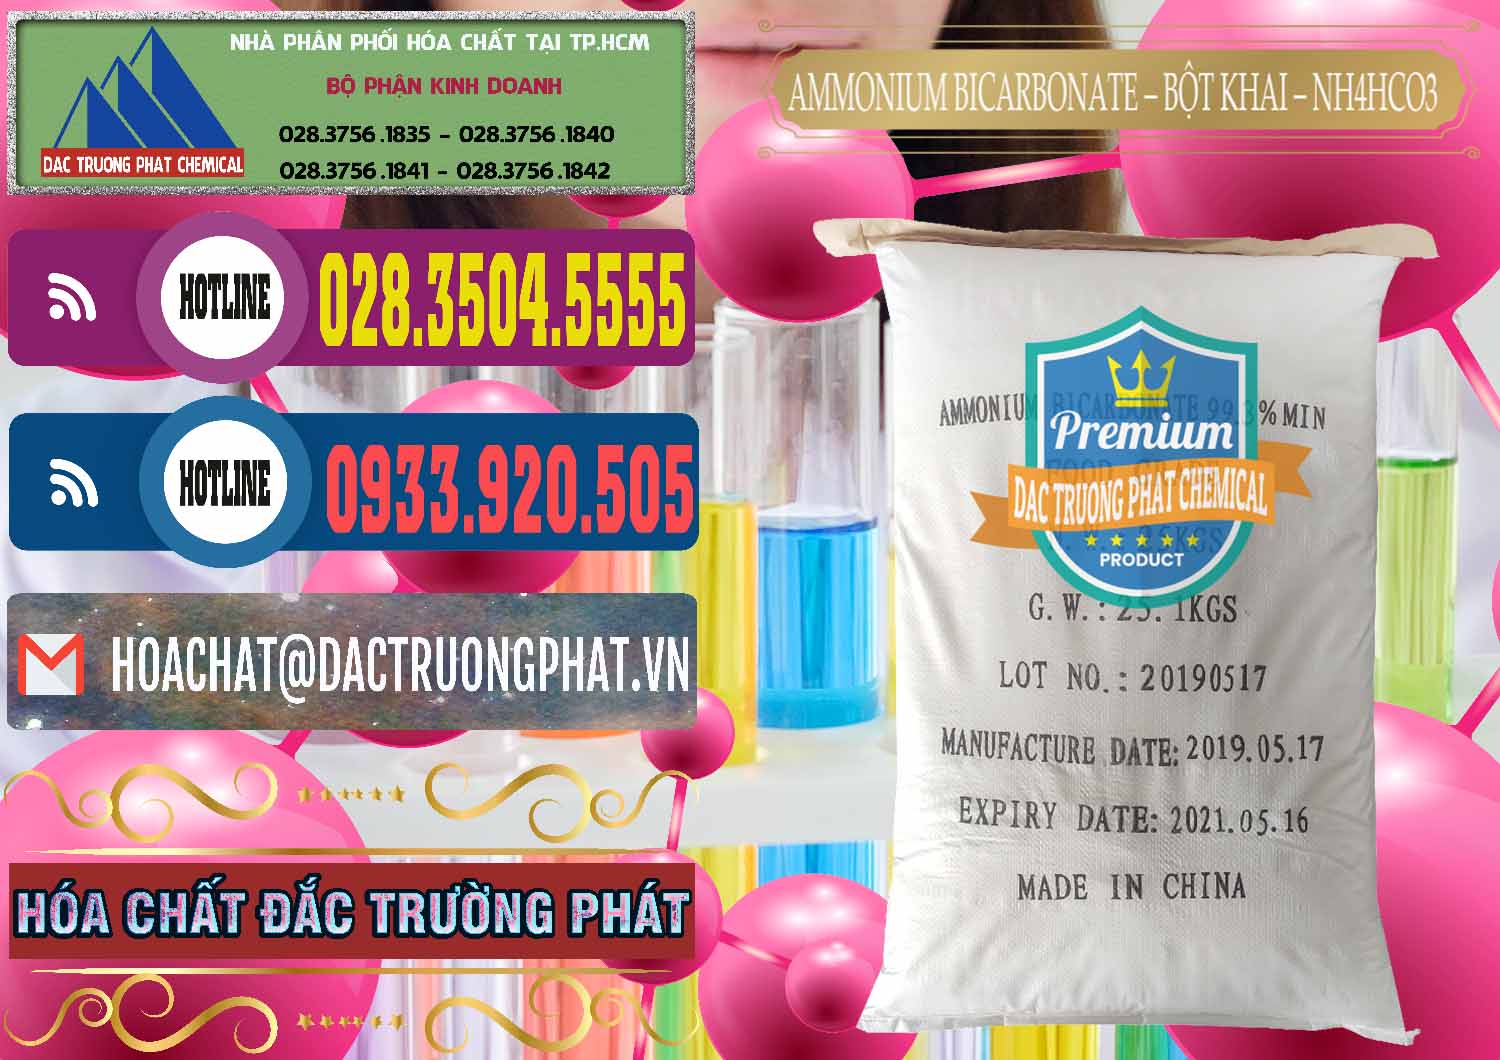 Cty chuyên kinh doanh và bán Ammonium Bicarbonate - Bột Khai Food Grade Trung Quốc China - 0018 - Công ty chuyên phân phối - bán hóa chất tại TP.HCM - muabanhoachat.com.vn